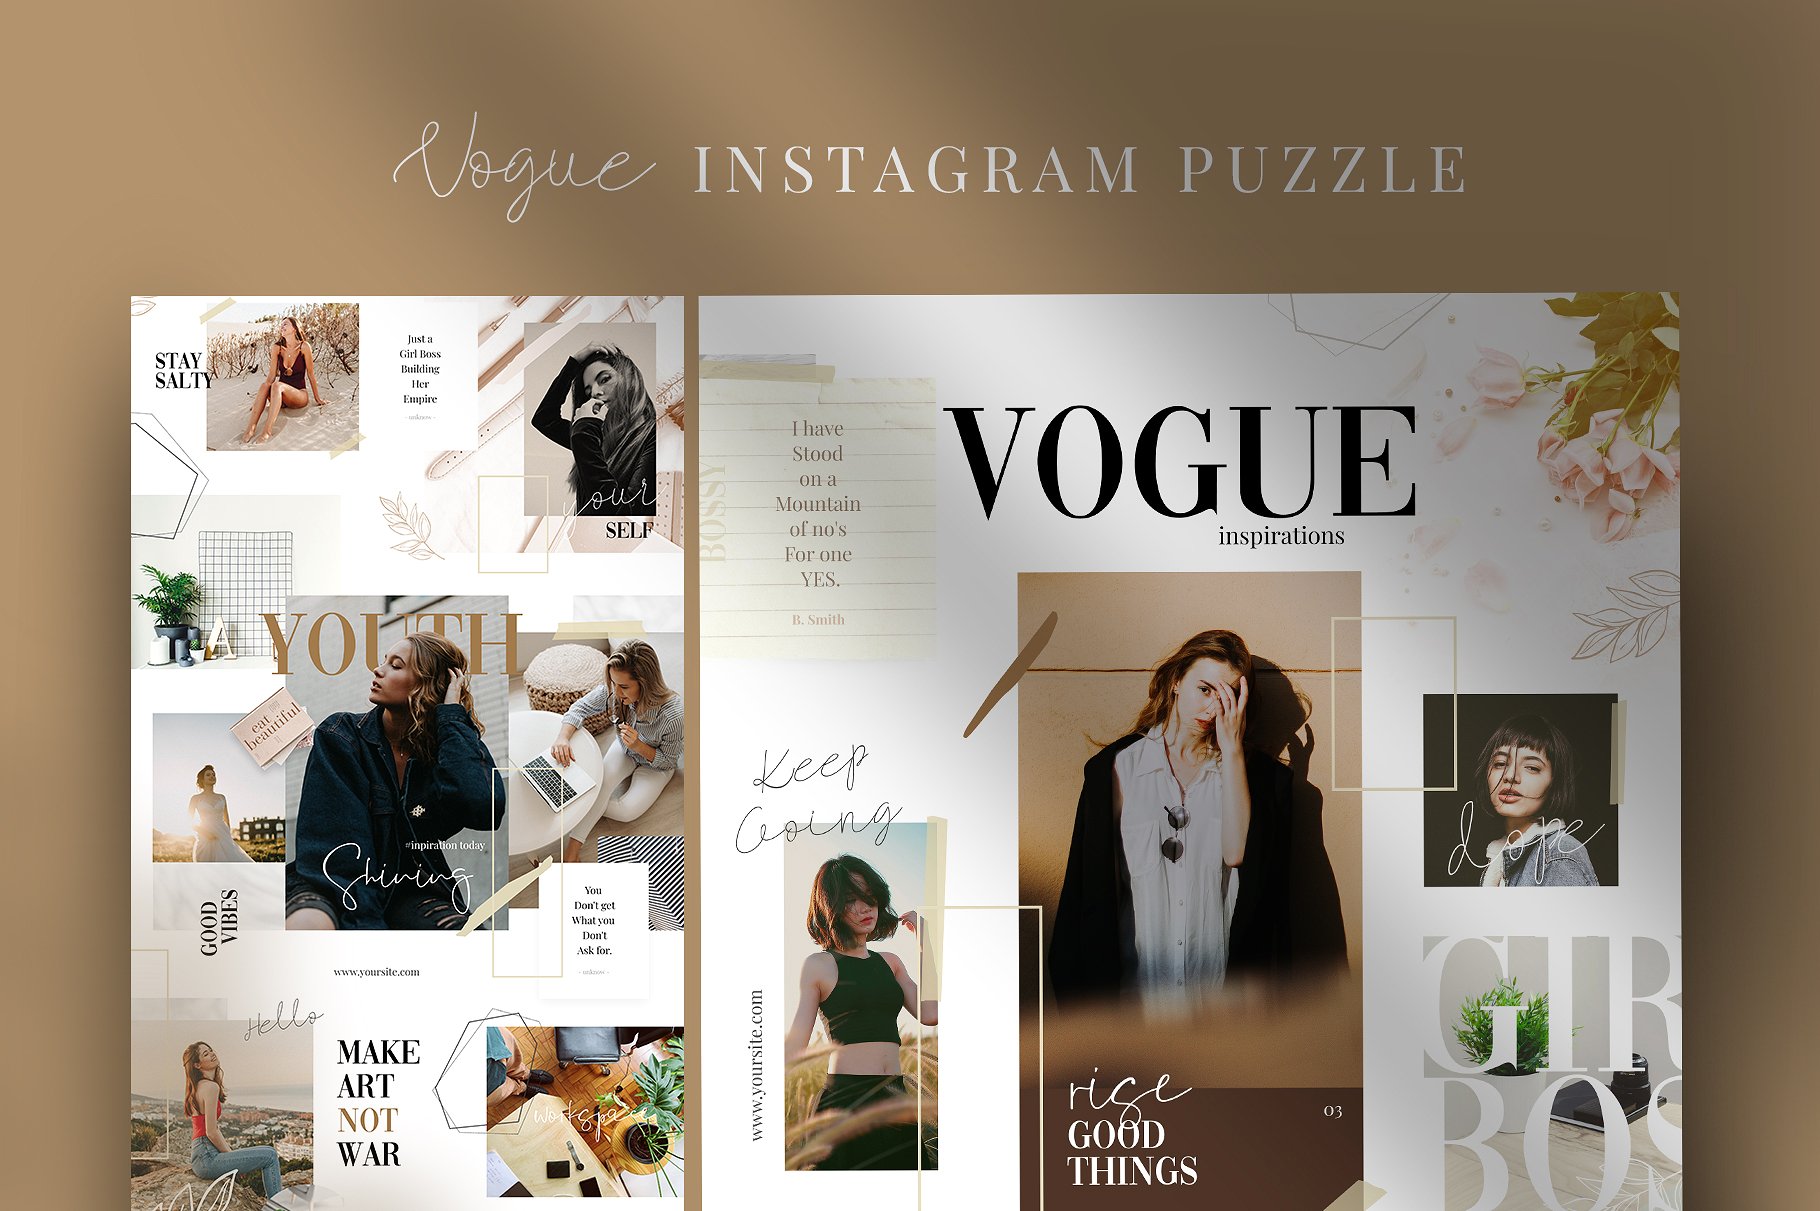 时尚高端的Instagram社交媒体拼图模板第一素材精选 Vogue – instagram puzzle [psd]插图